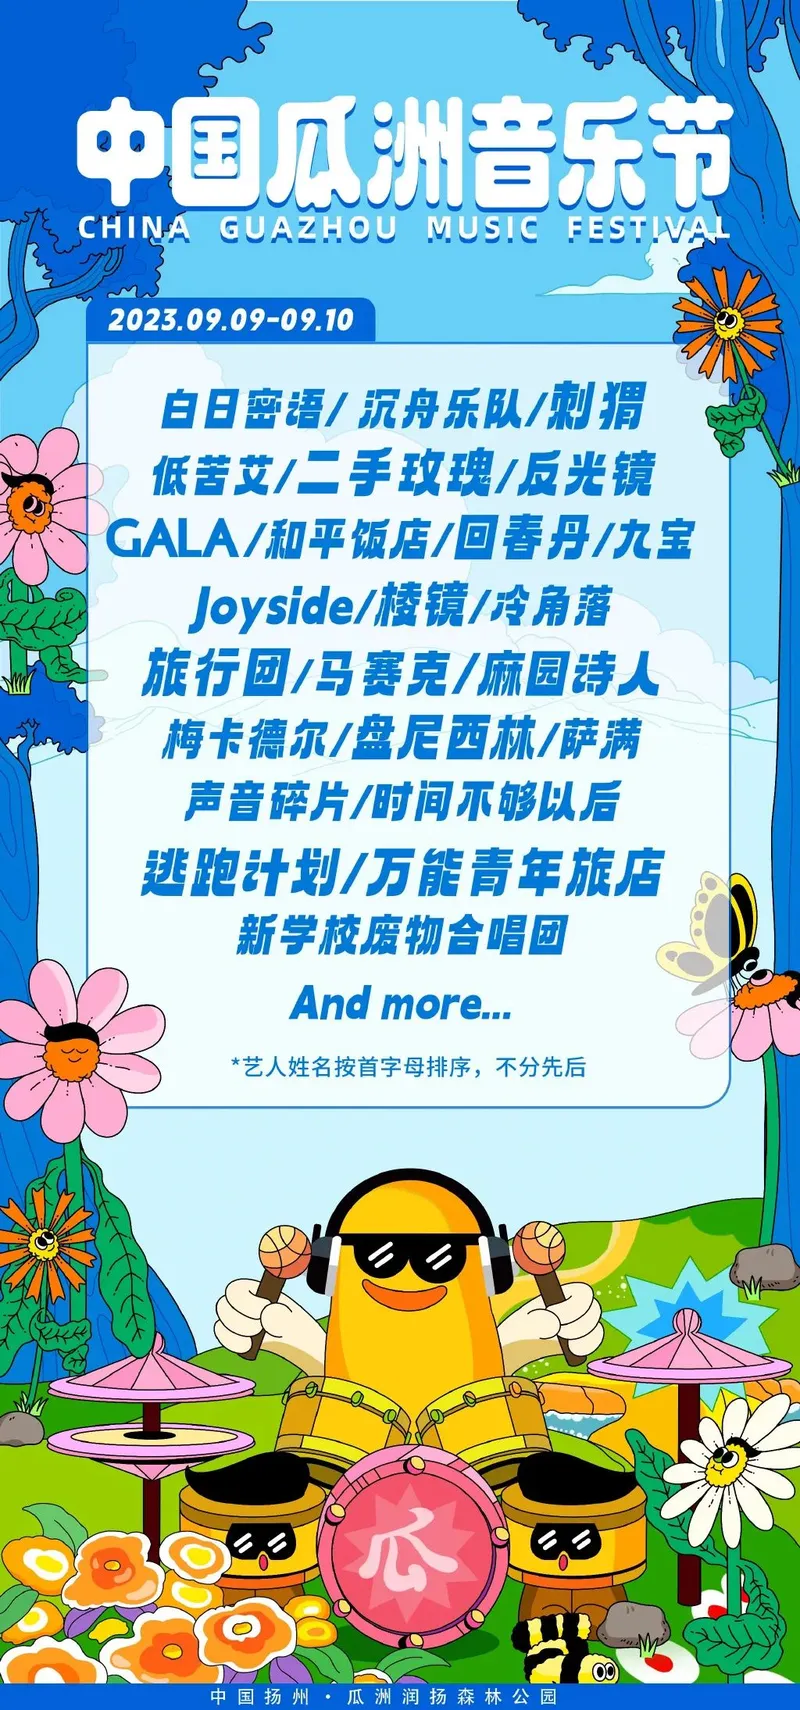 【扬州】丨2023中国瓜洲音乐节（二手玫瑰、万青、刺猬、GALA、棱镜......）